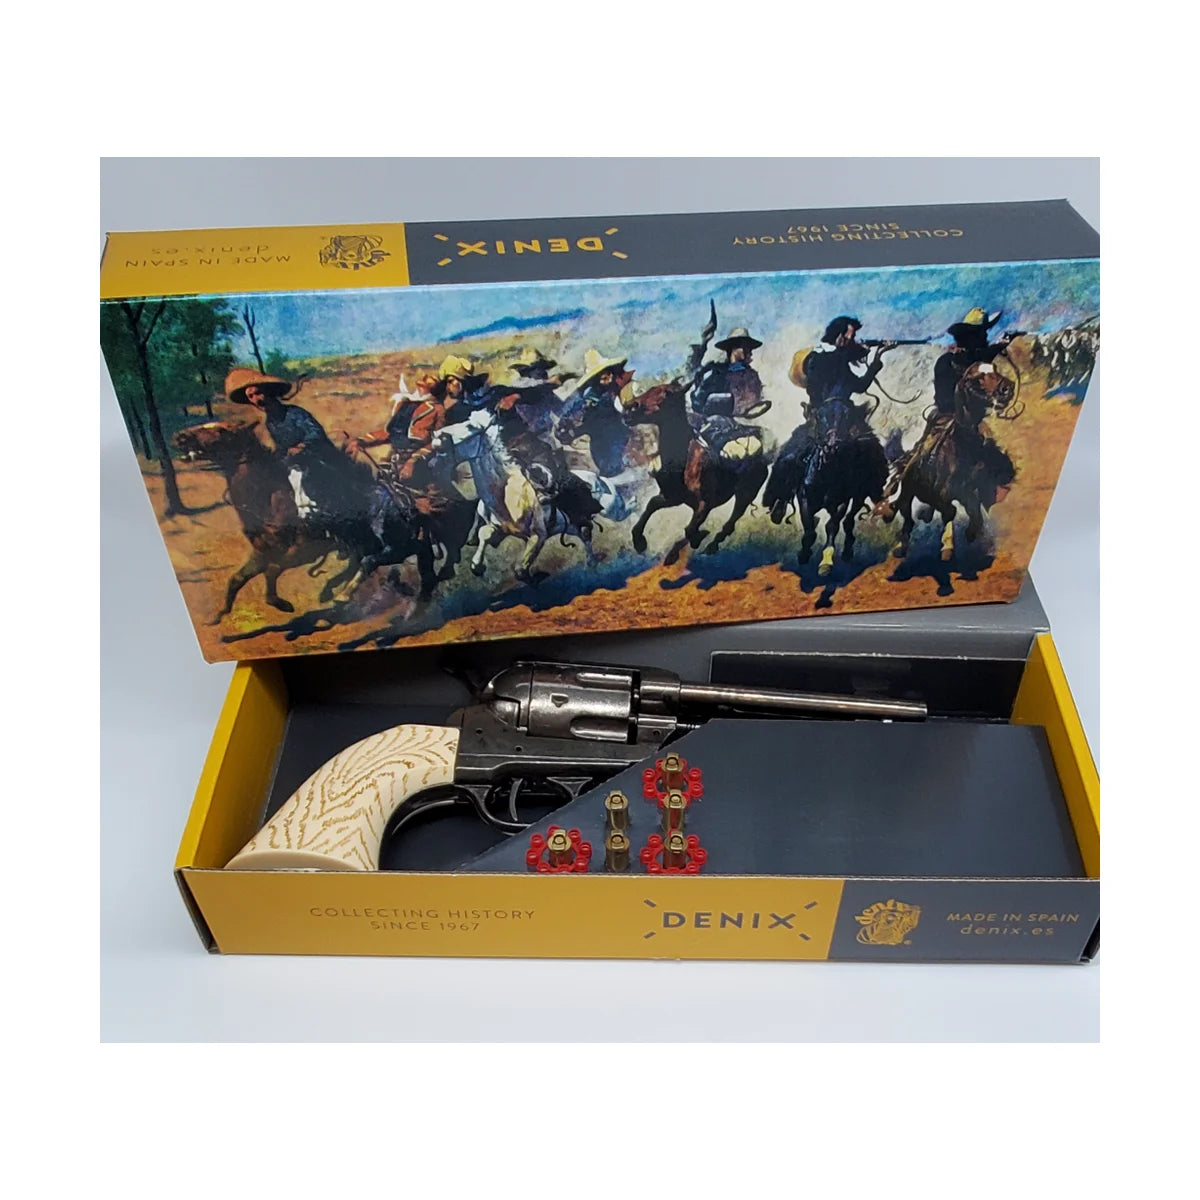 Replica Gun (071-8186) - .45 Caliber Peacemaker Revolver Special Edition Gift Set